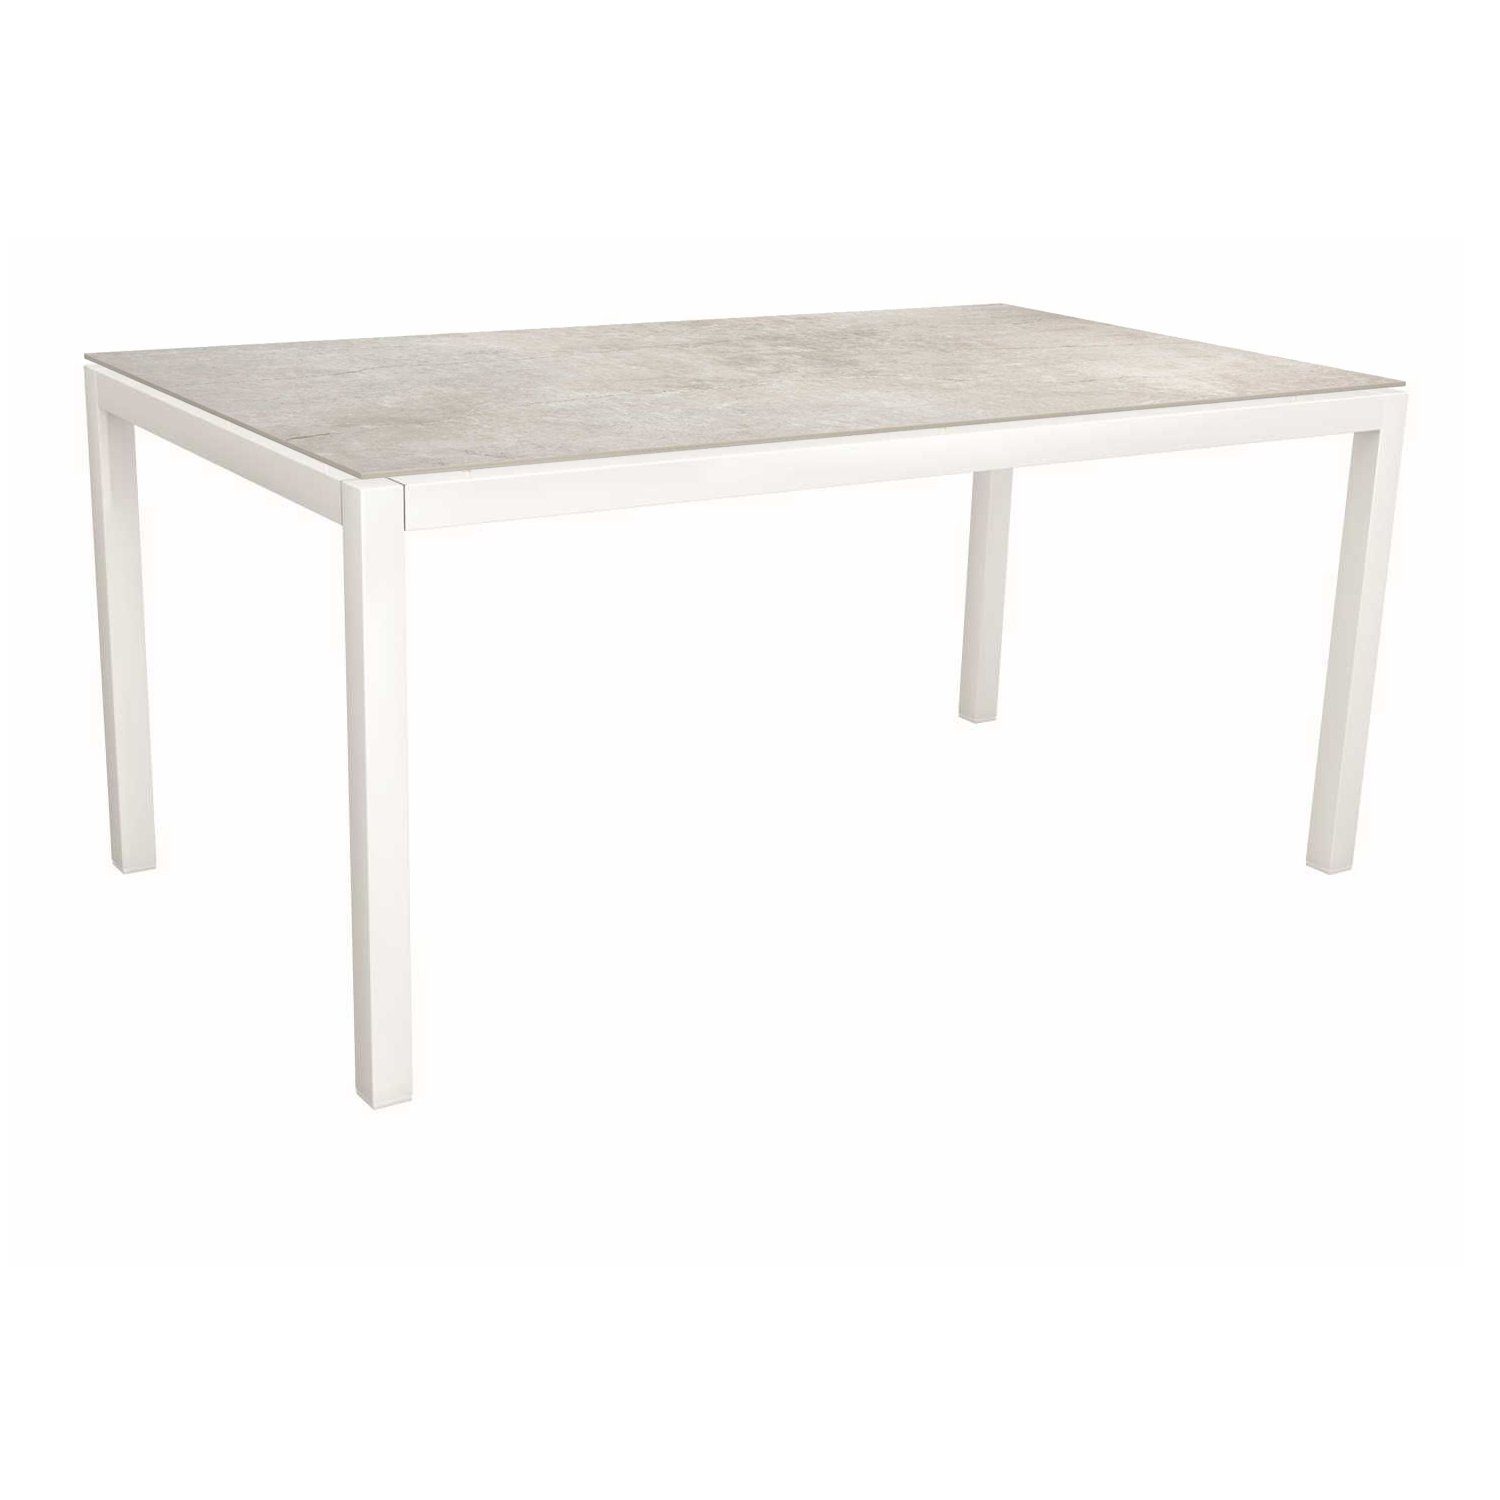 Stern Tischsystem, Gestell Aluminium weiß, Tischplatte Dekton Lava hellgrau, 160x90 cm